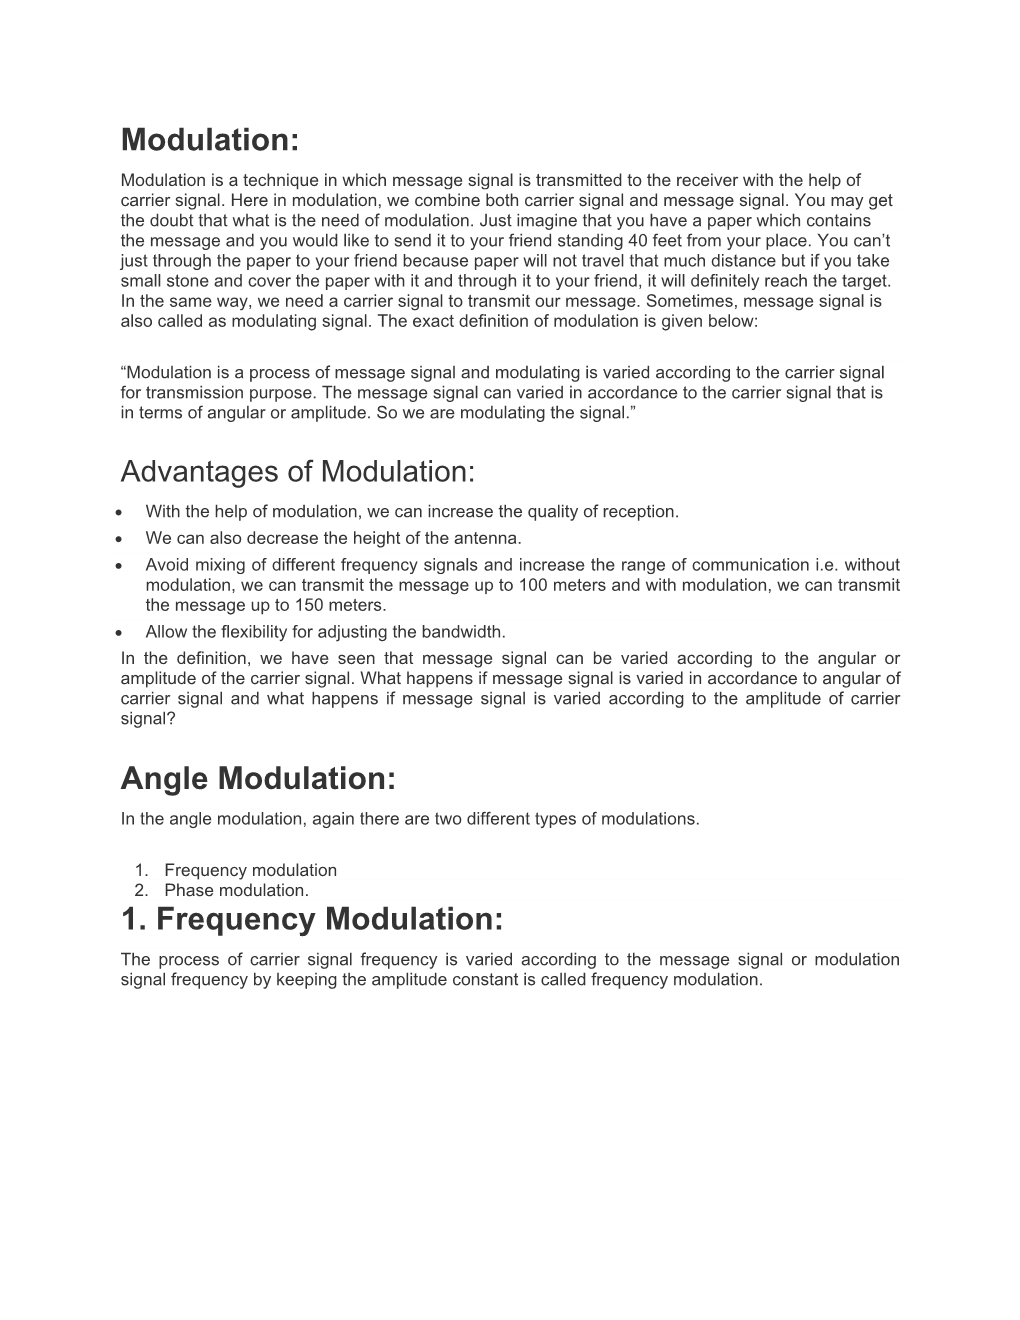 Modulation: Angle Modulation: 1. Frequency Modulation